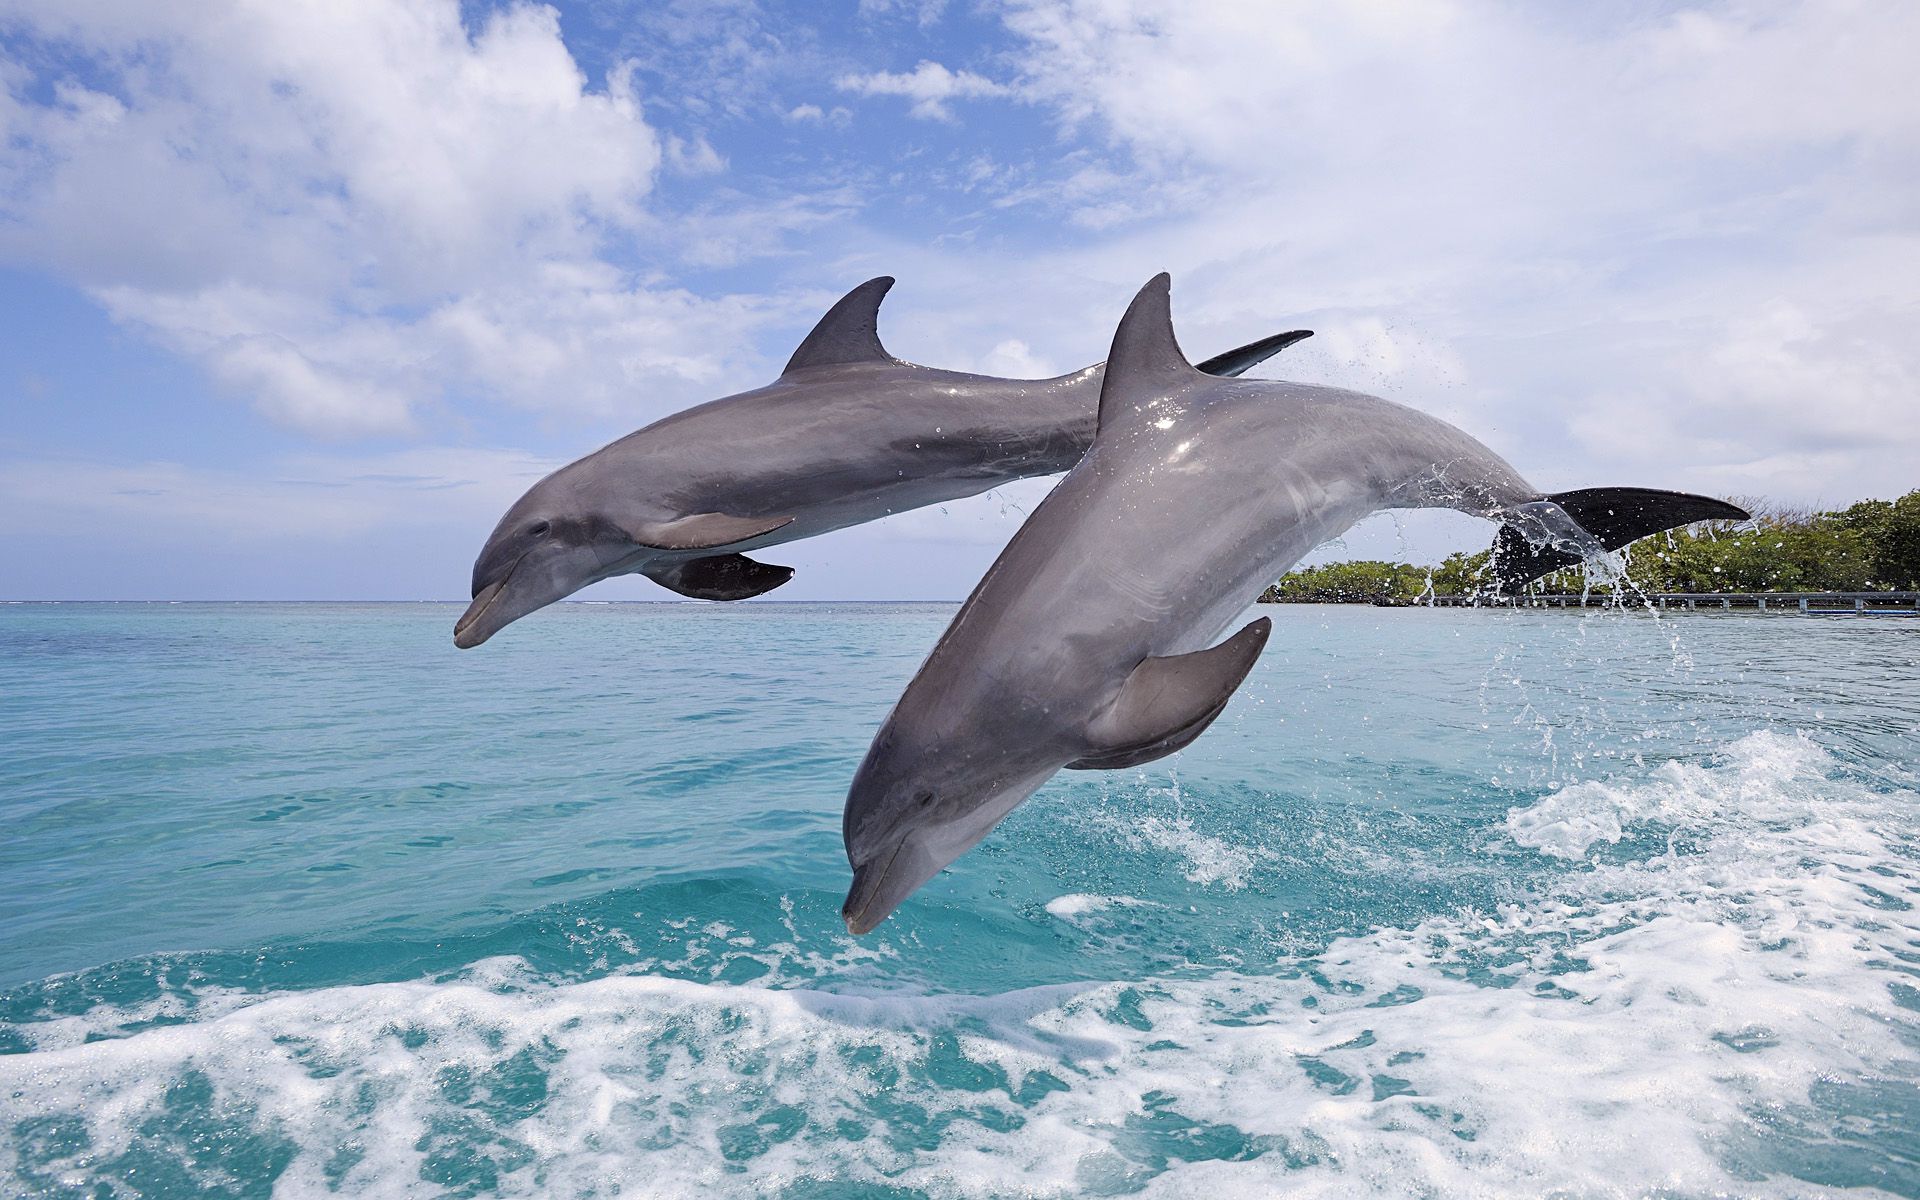 Γιατί τα δελφίνια πηδούν έξω από το νερό;